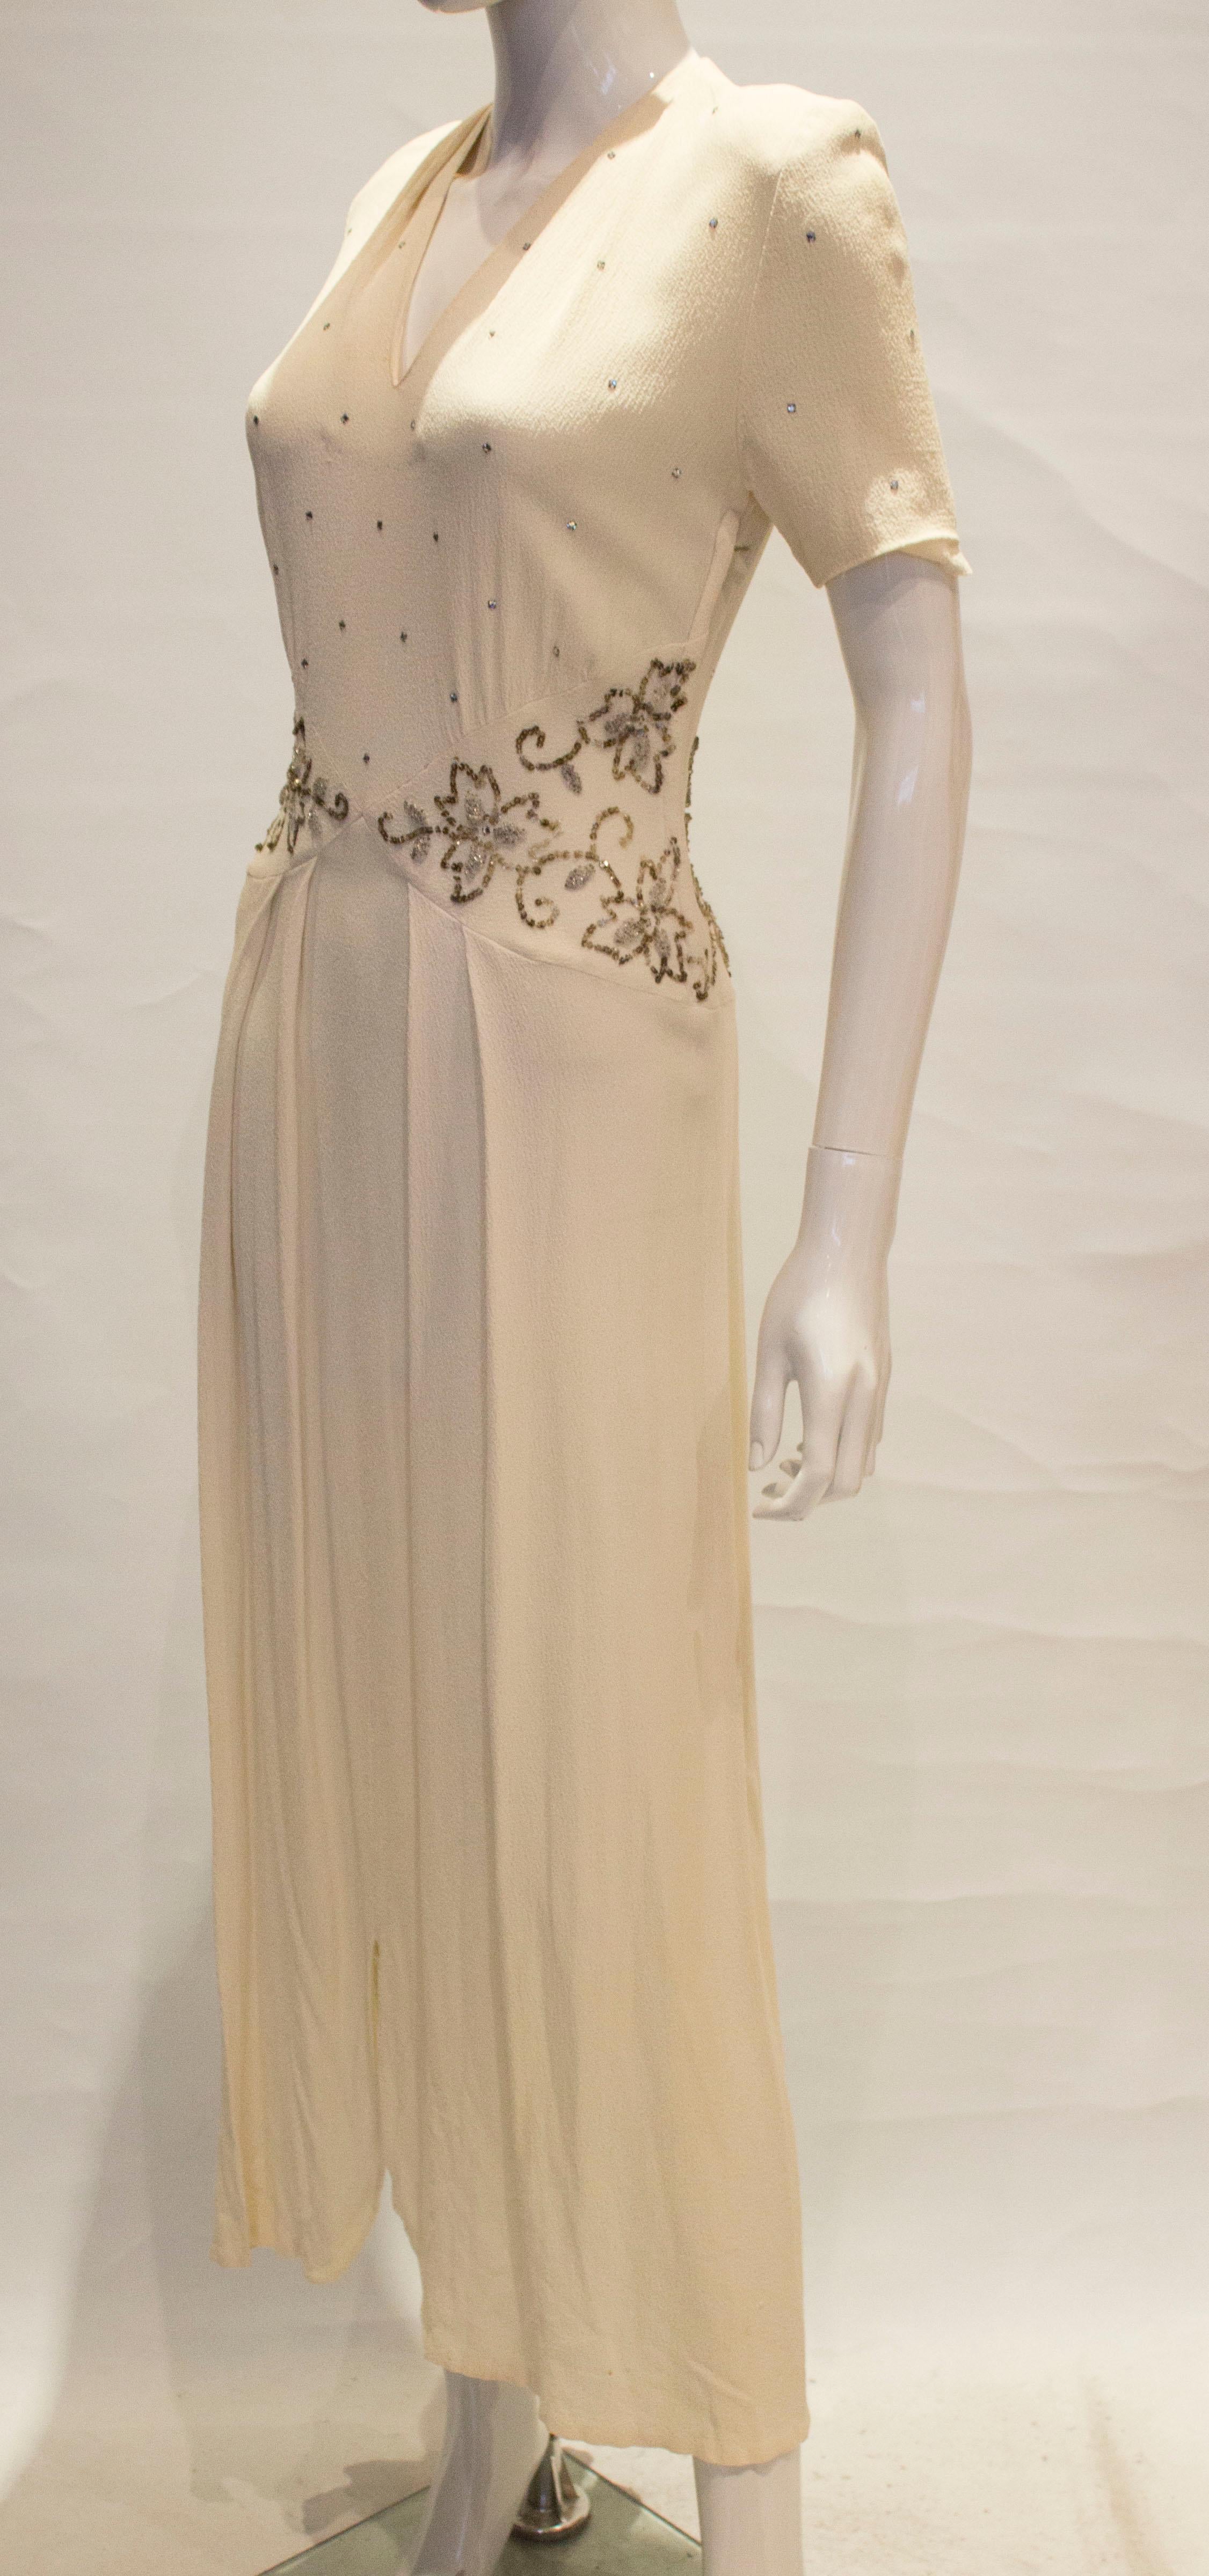 1940s crepe dress